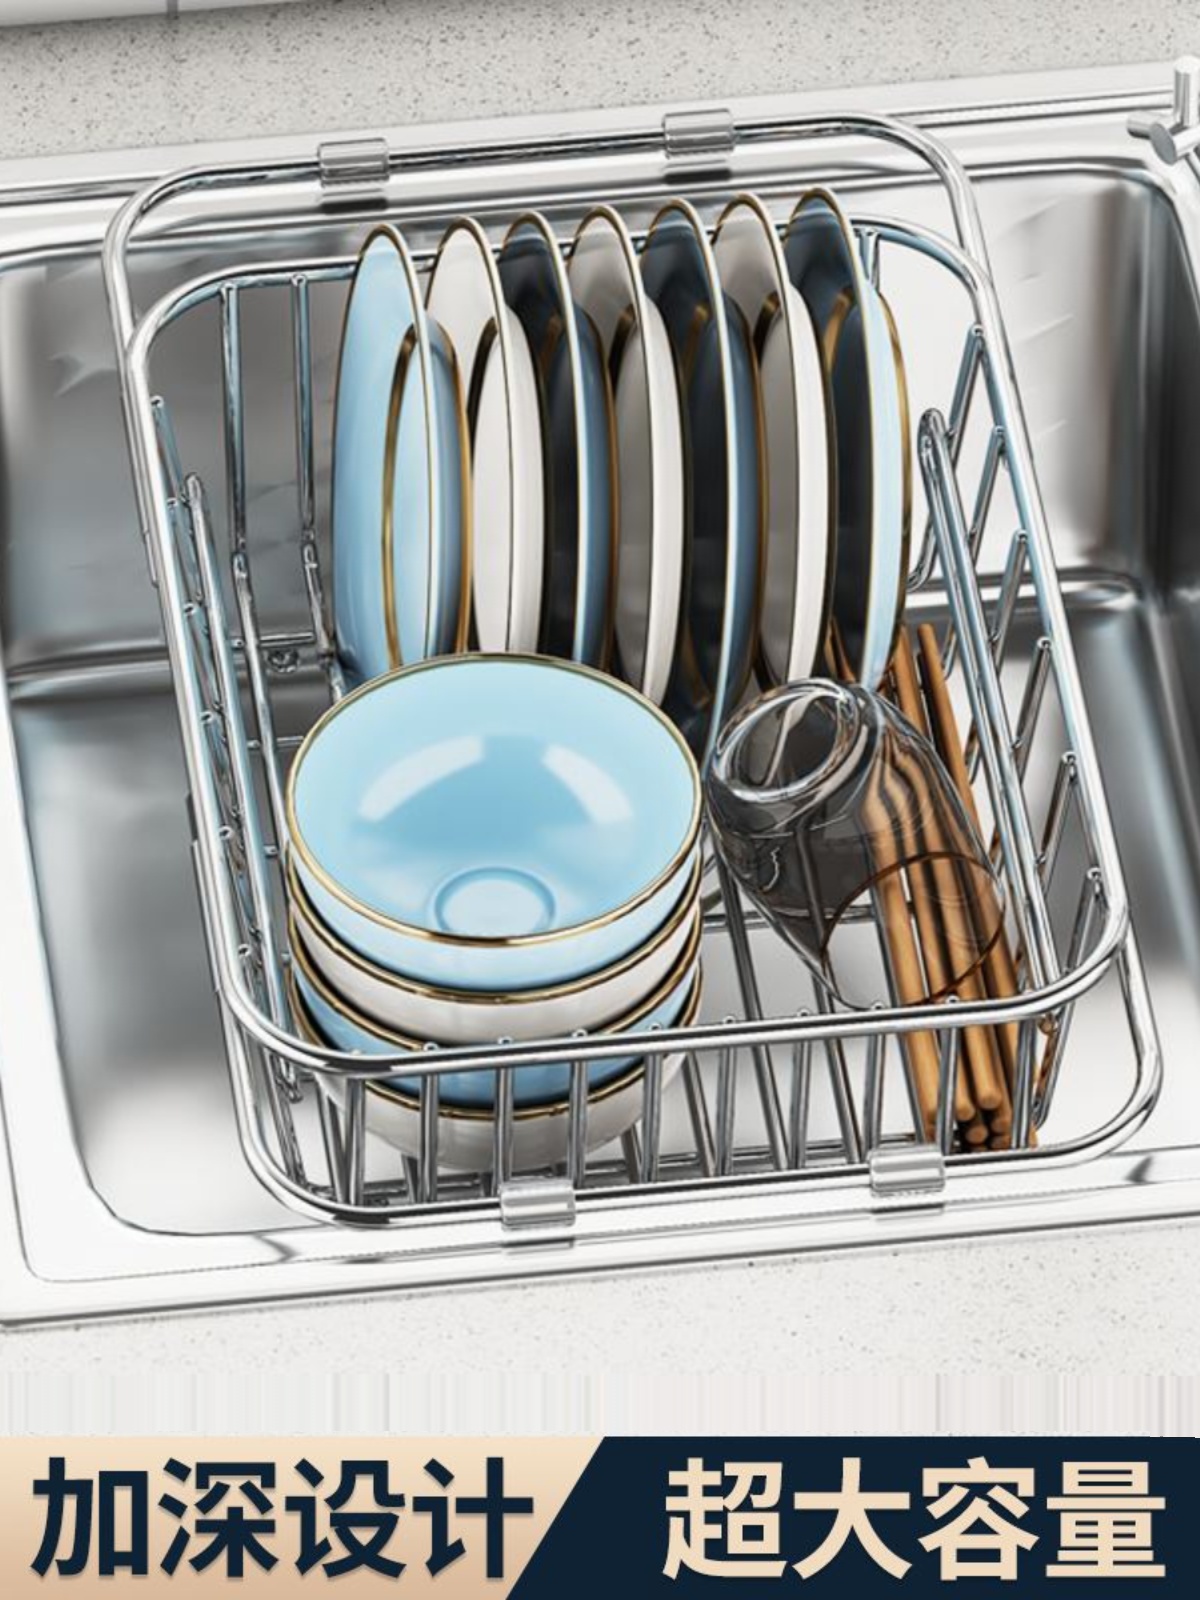 不鏽鋼瀝水架洗碗池廚房置物架 伸縮水槽瀝水籃碗架 (8.3折)